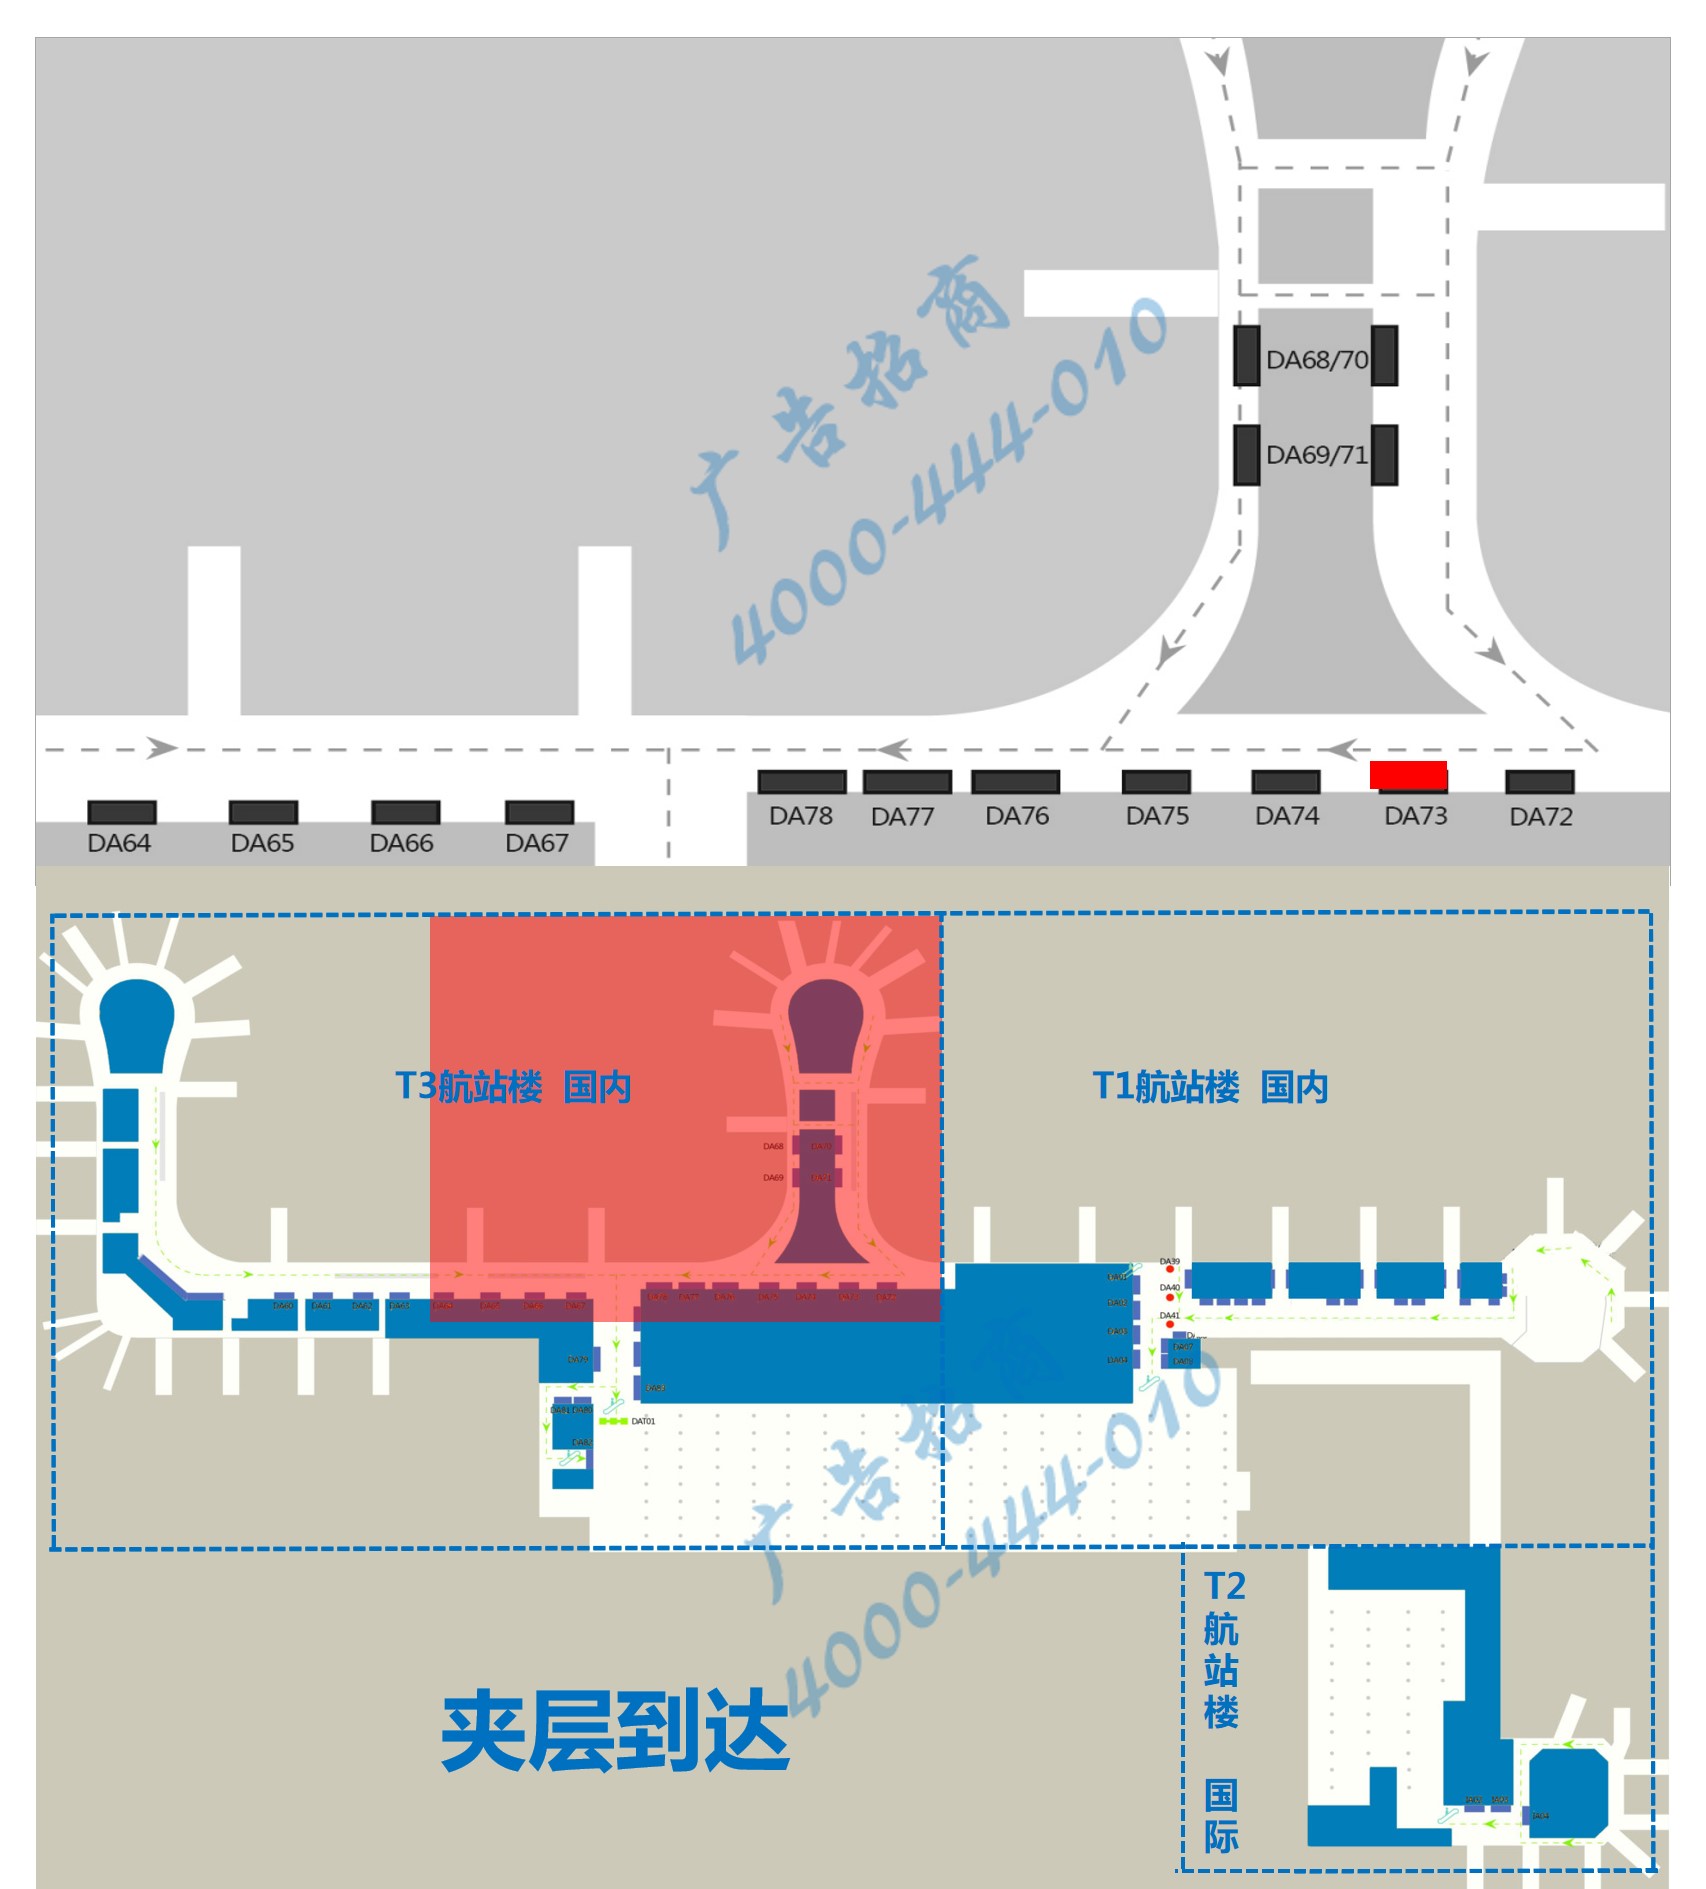 杭州萧山机场广告-T3到达通廊灯箱DA73位置图